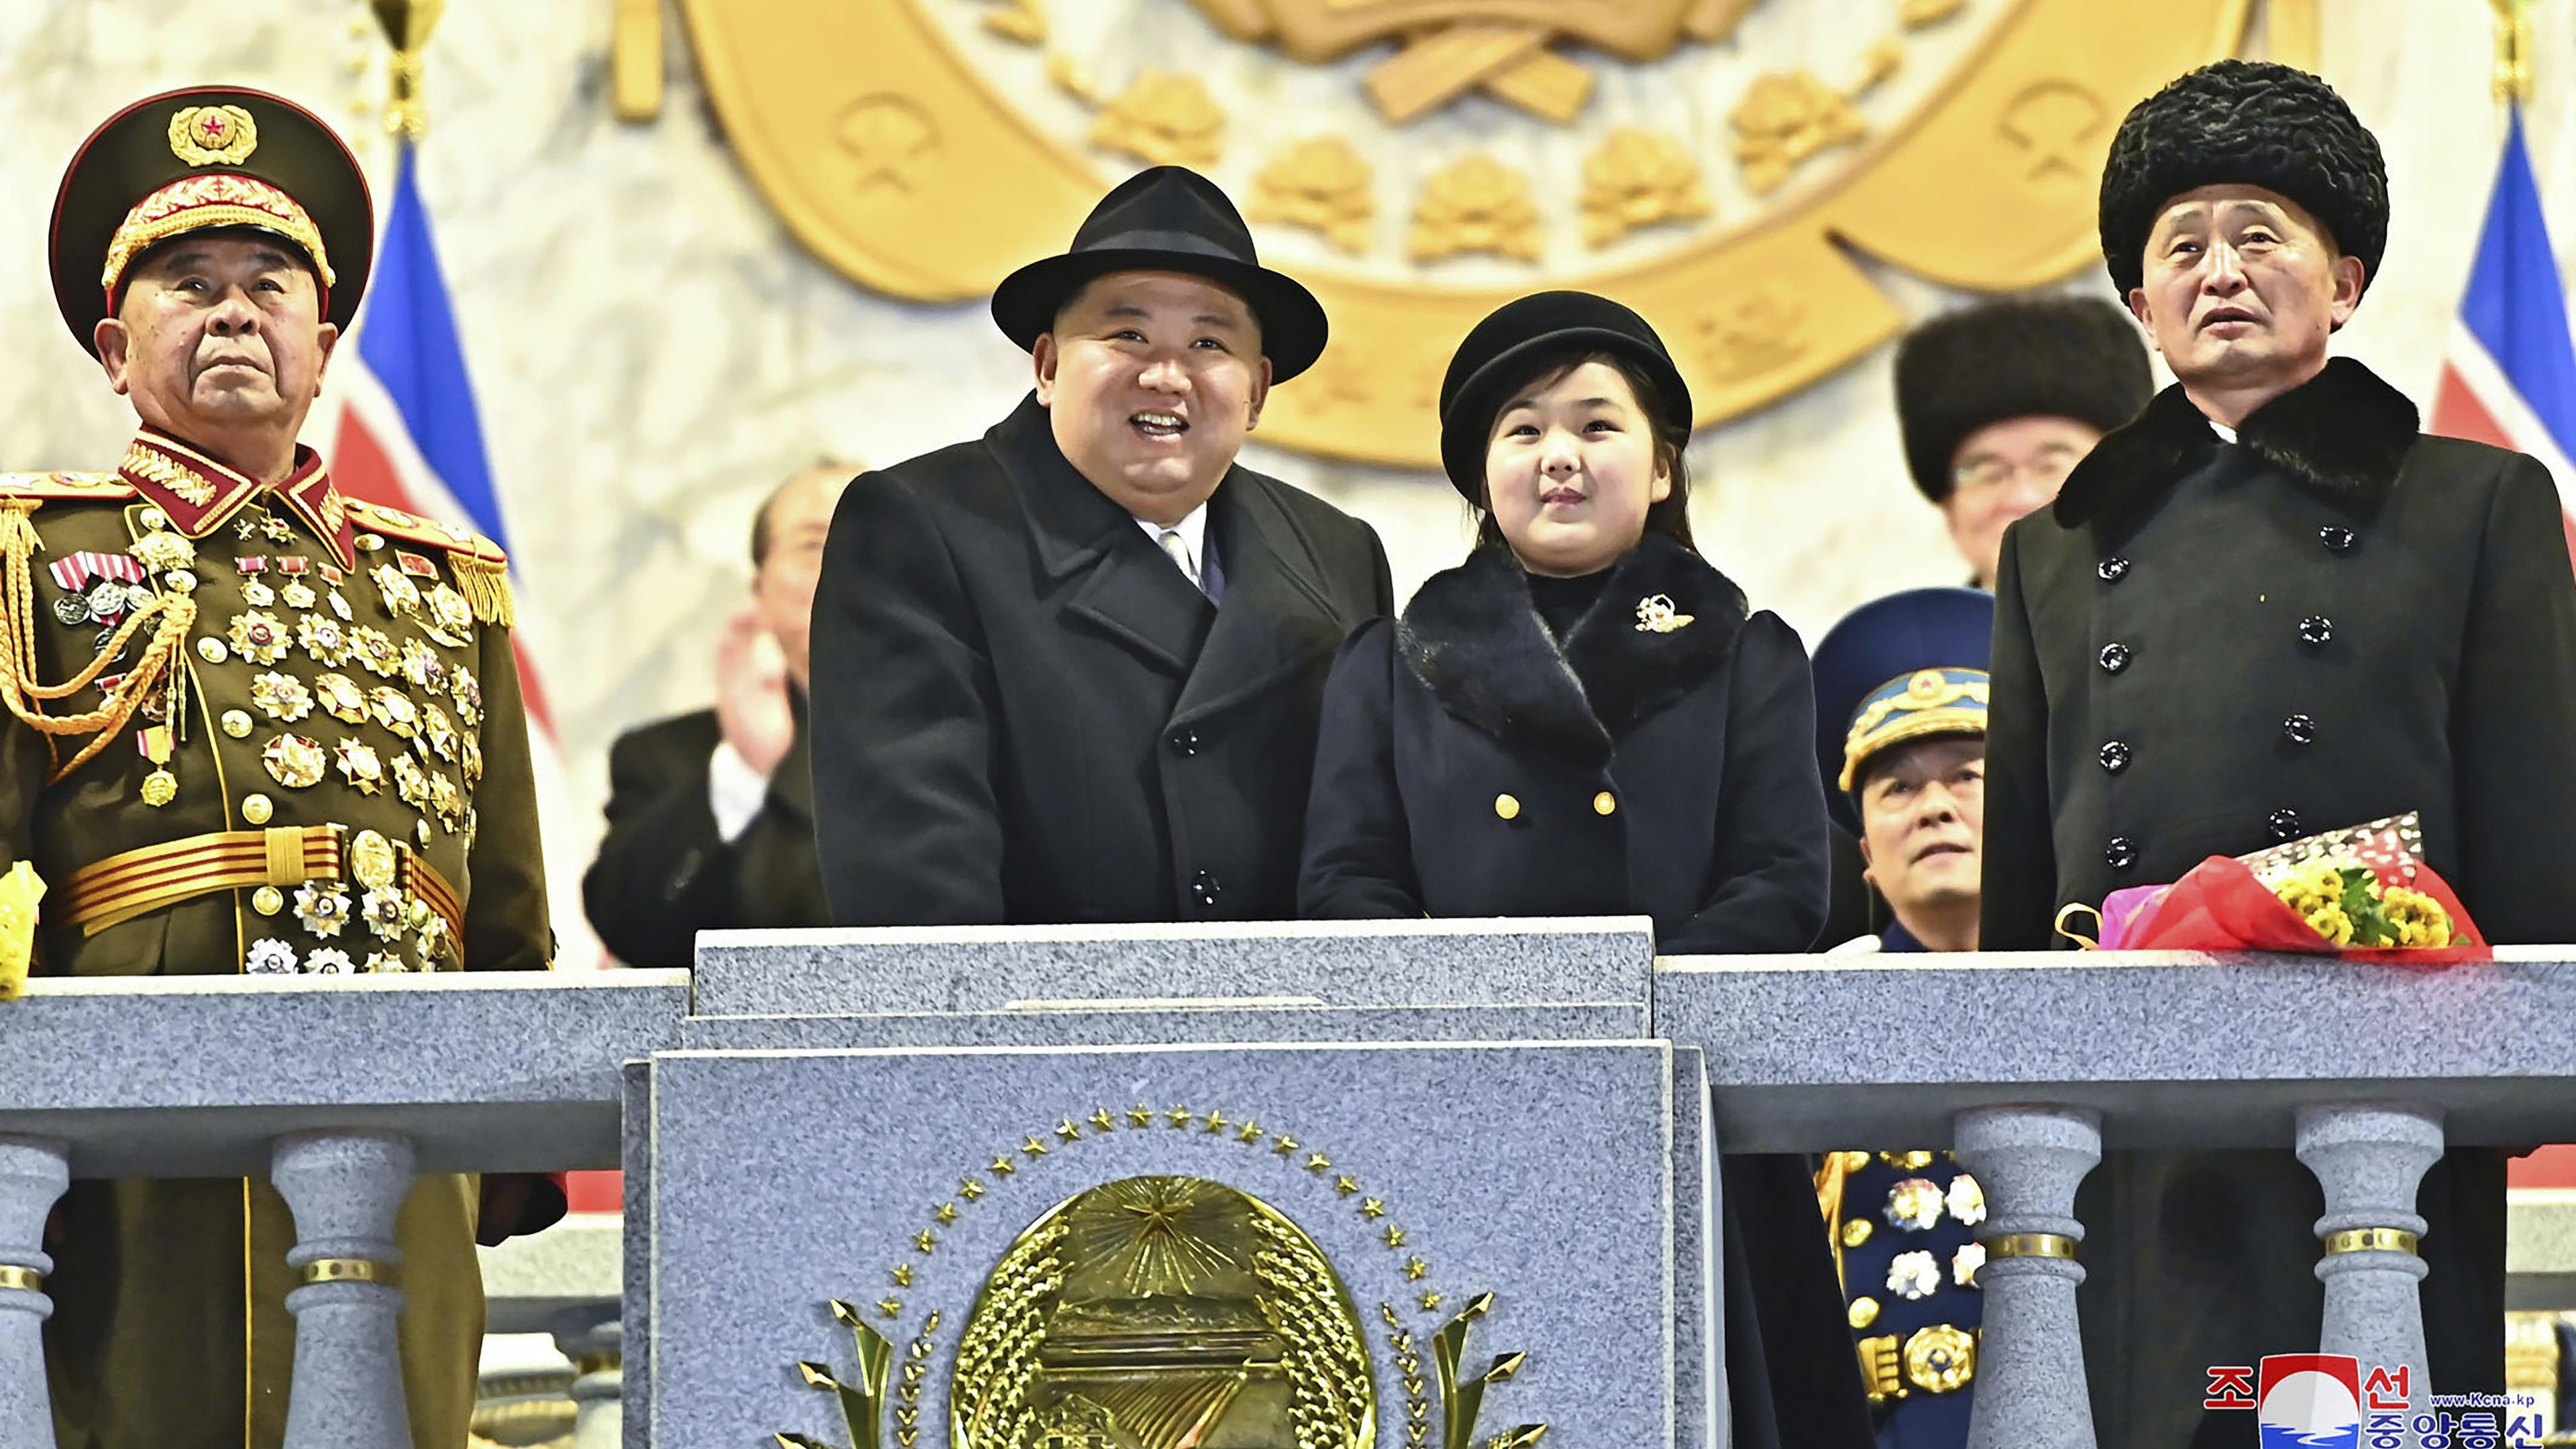 Nordkoreas ledare Kim Jong-Un med sin dotter Kim Ju-Ae i firandet av 75-årsdagen för grundandet av Folkets armé i Nordkorea den 8 februari 2023. Foto: Korean Central News Agency/Korea News Service via AP/TT Nyhetsbyrån